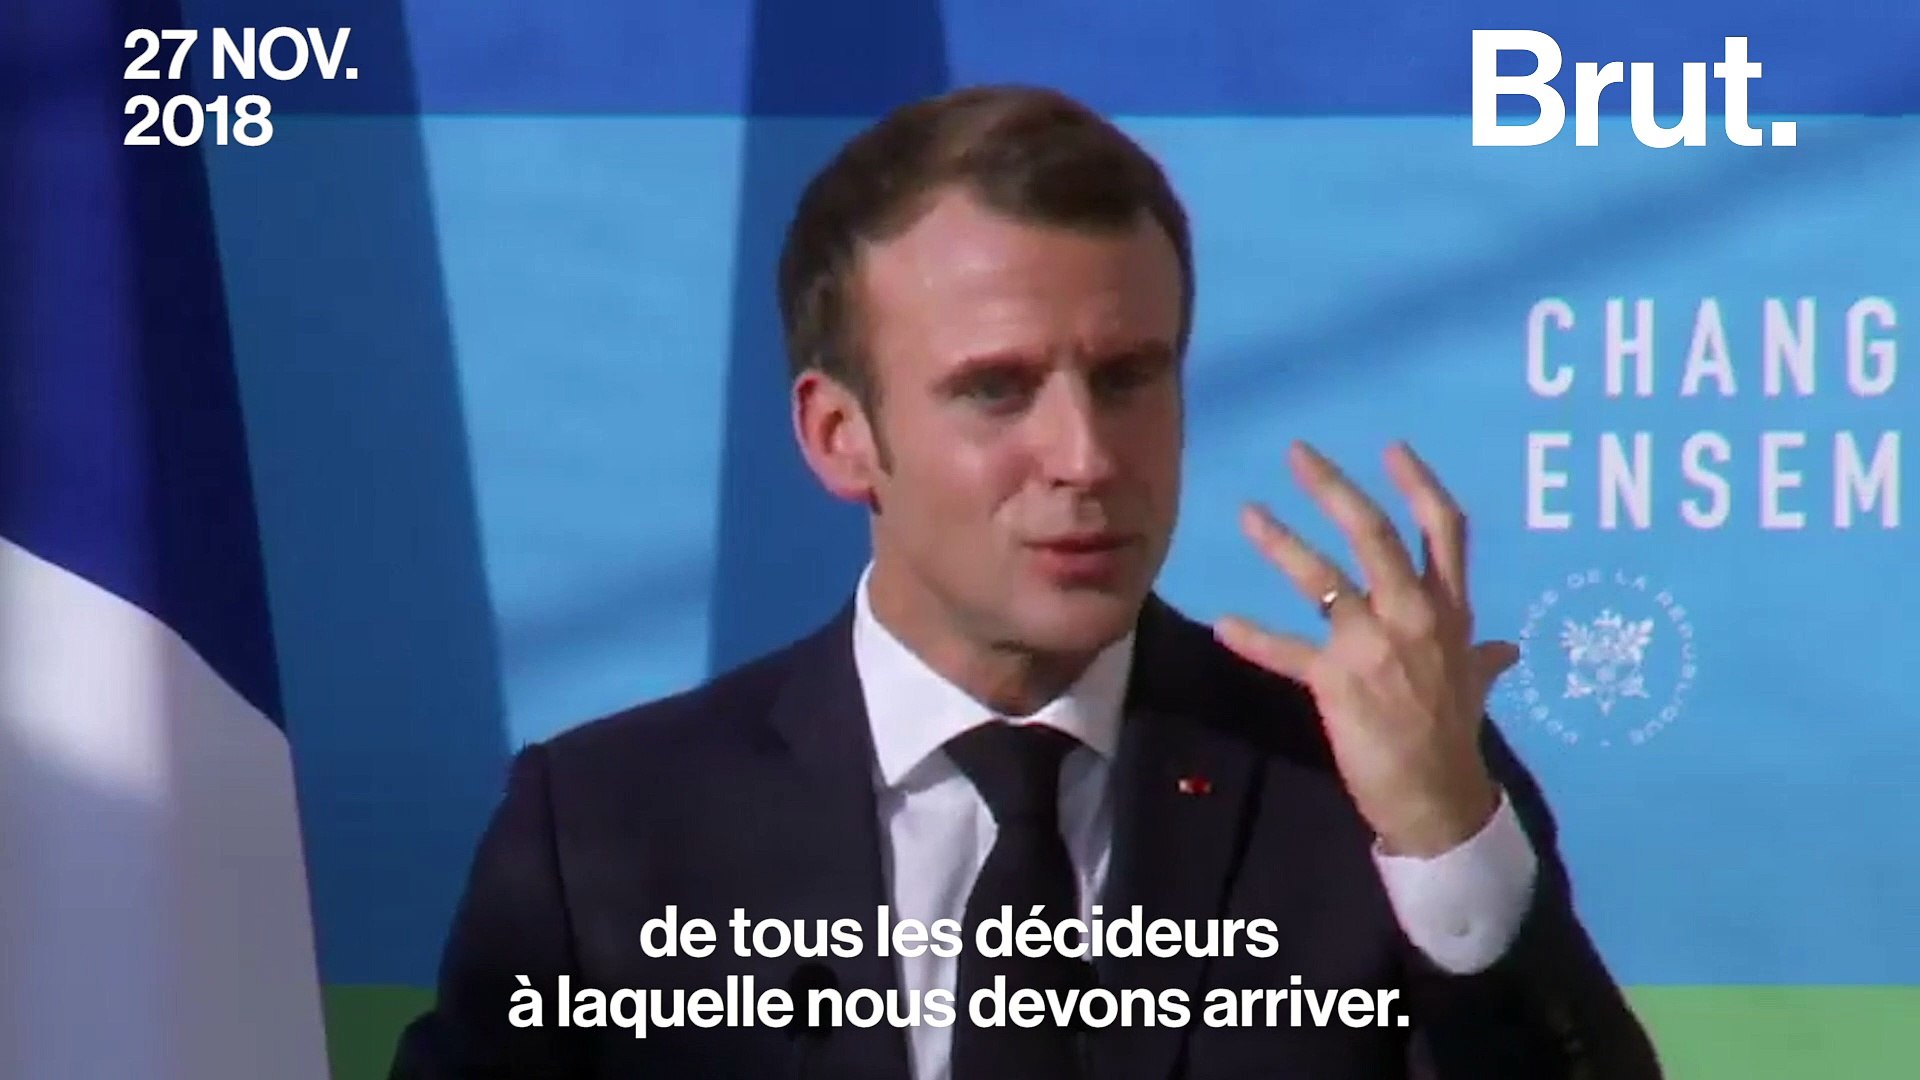 Le message d'Emmanuel Macron pour les gilets jaunes - Vidéo Dailymotion